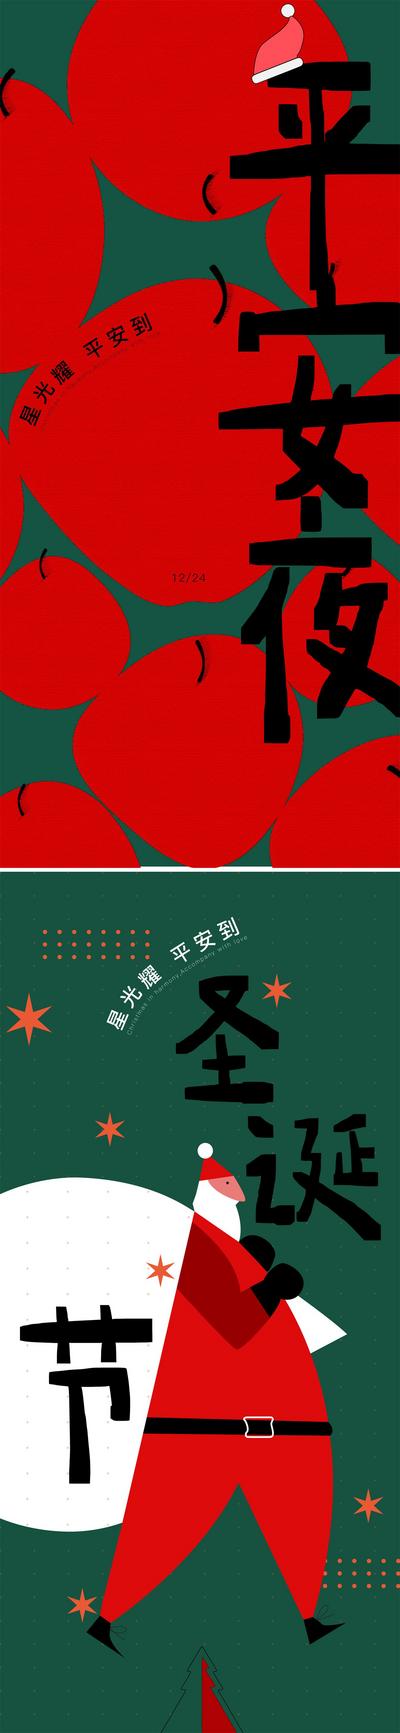 南门网 海报 西方节日 平安夜 圣诞节 卡通 抽象 简约 色块 苹果 圣诞老人